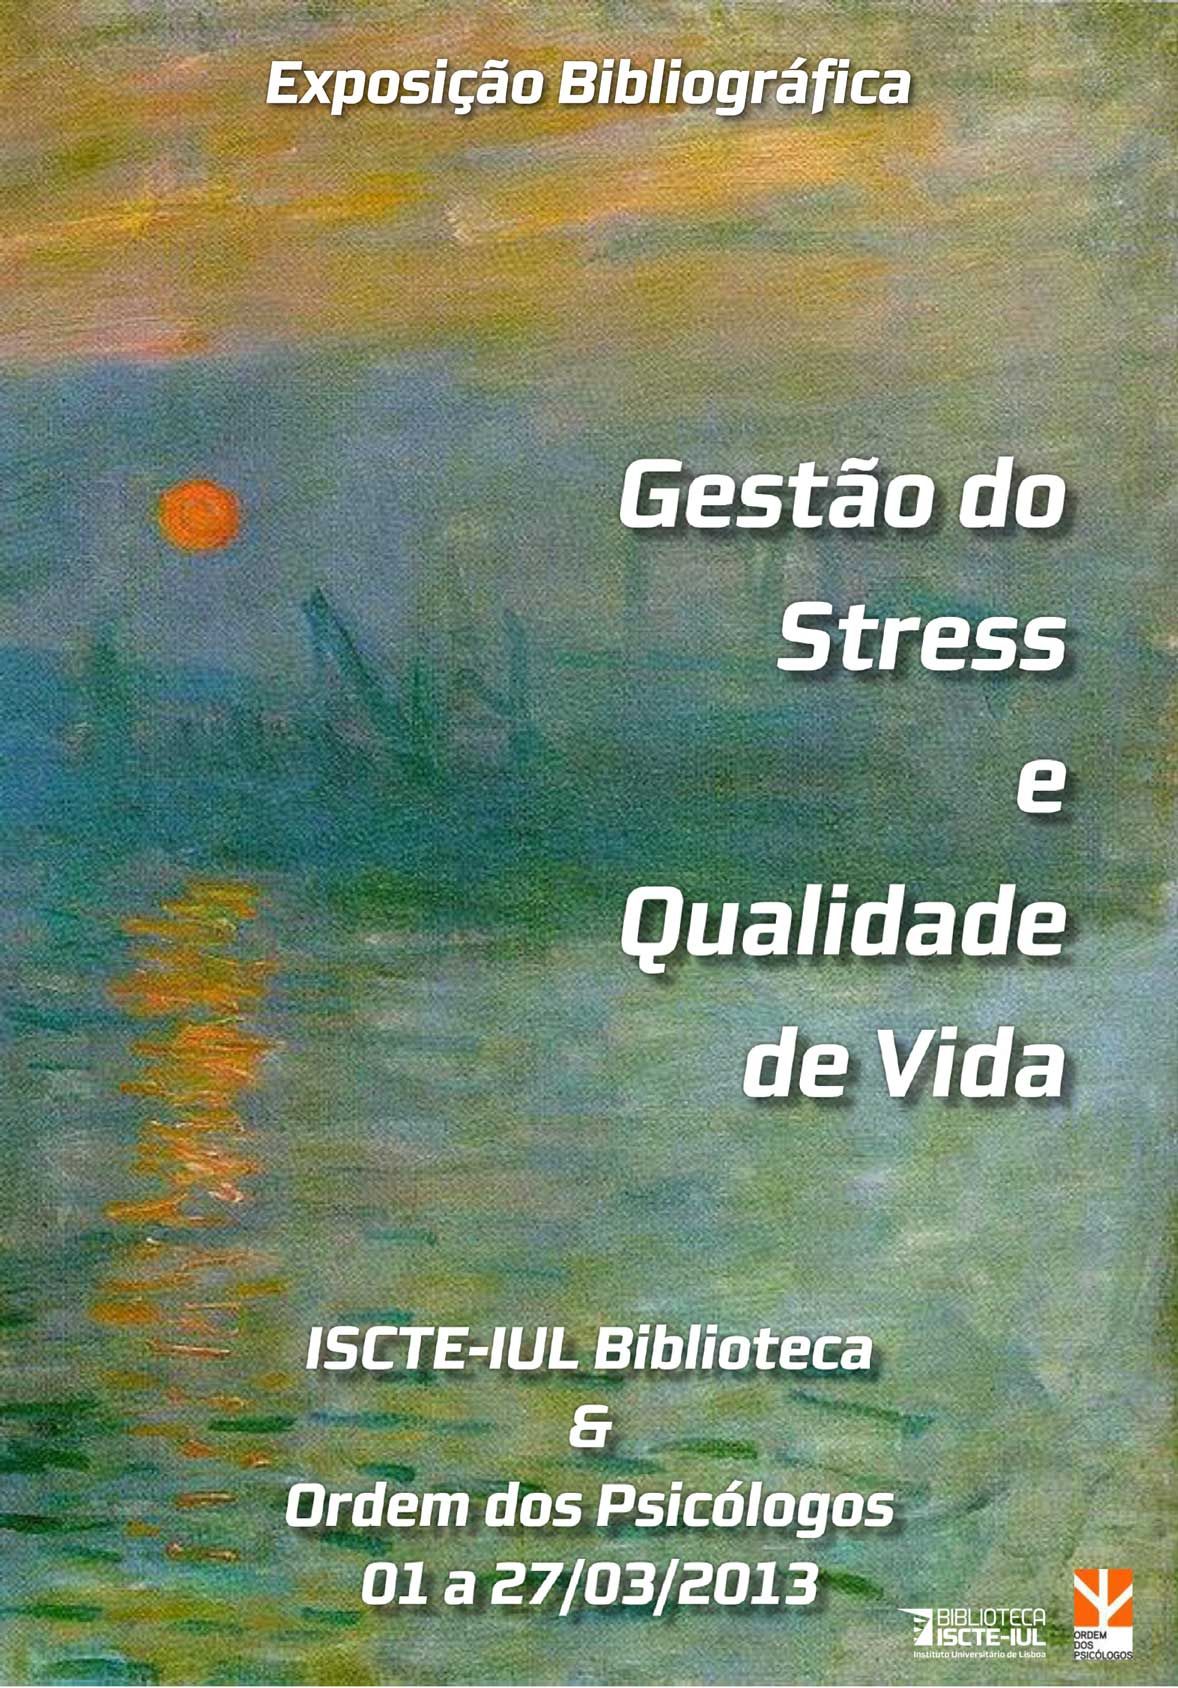 Cartaz da Exposição Bibliográfica (mar 2013) – Gestão do Stress e Qualidade de Vida